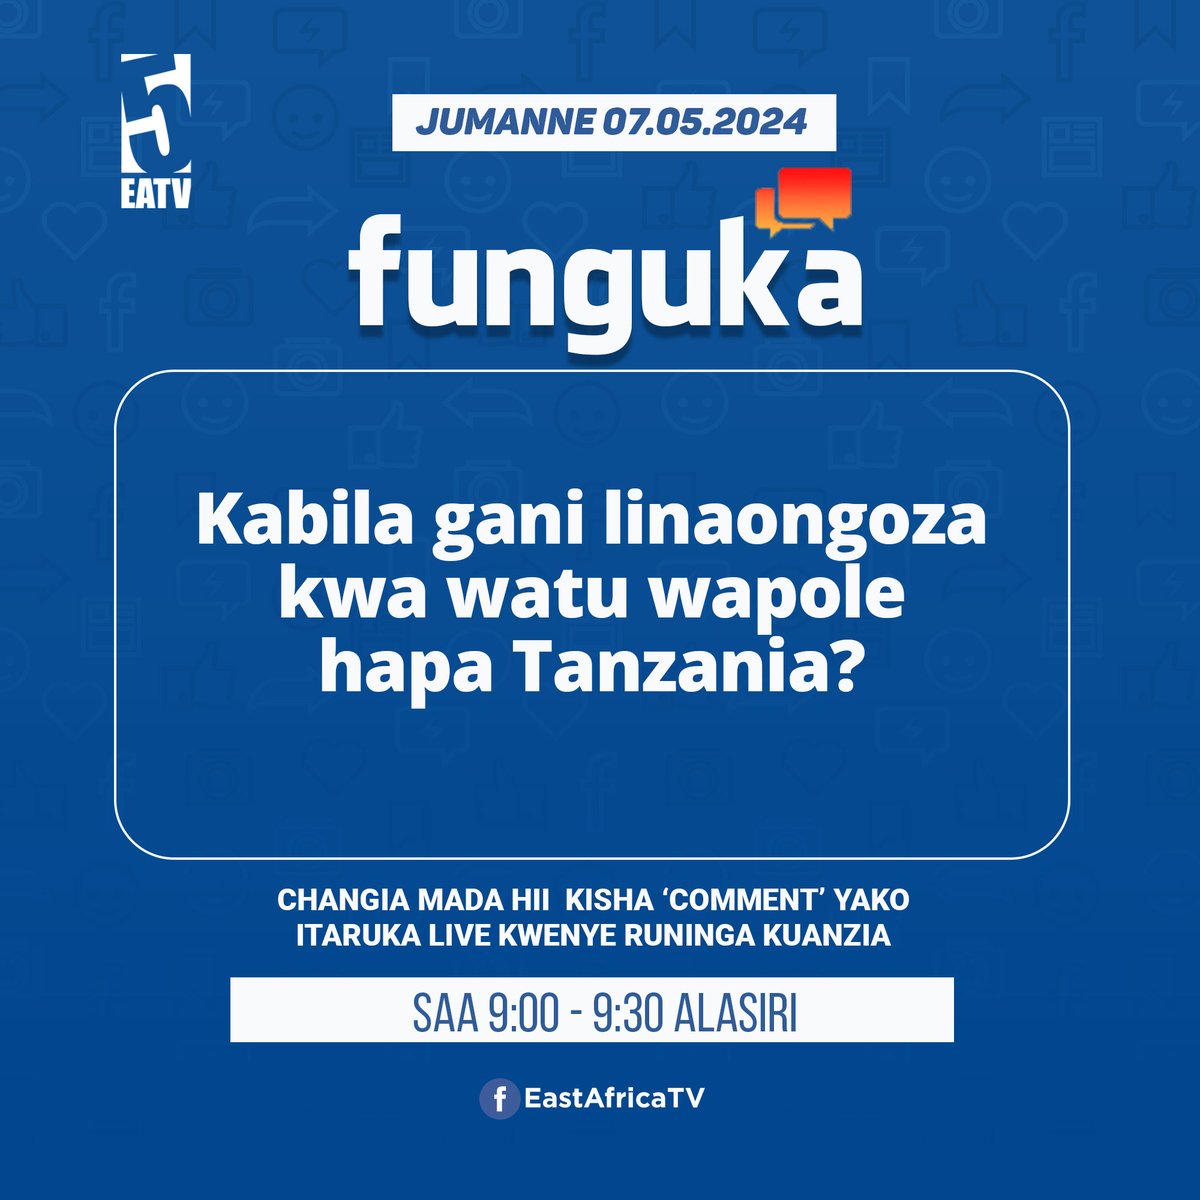 #FUNGUKA: Tuandikie comment yako, halafu sisi tutaruka nayo live ndani ya #EastAfricaTV saa 9:00 alasiri. #EastAfricaTV #EastAfricaRadio #Funguka #live #Kabila #Wapole